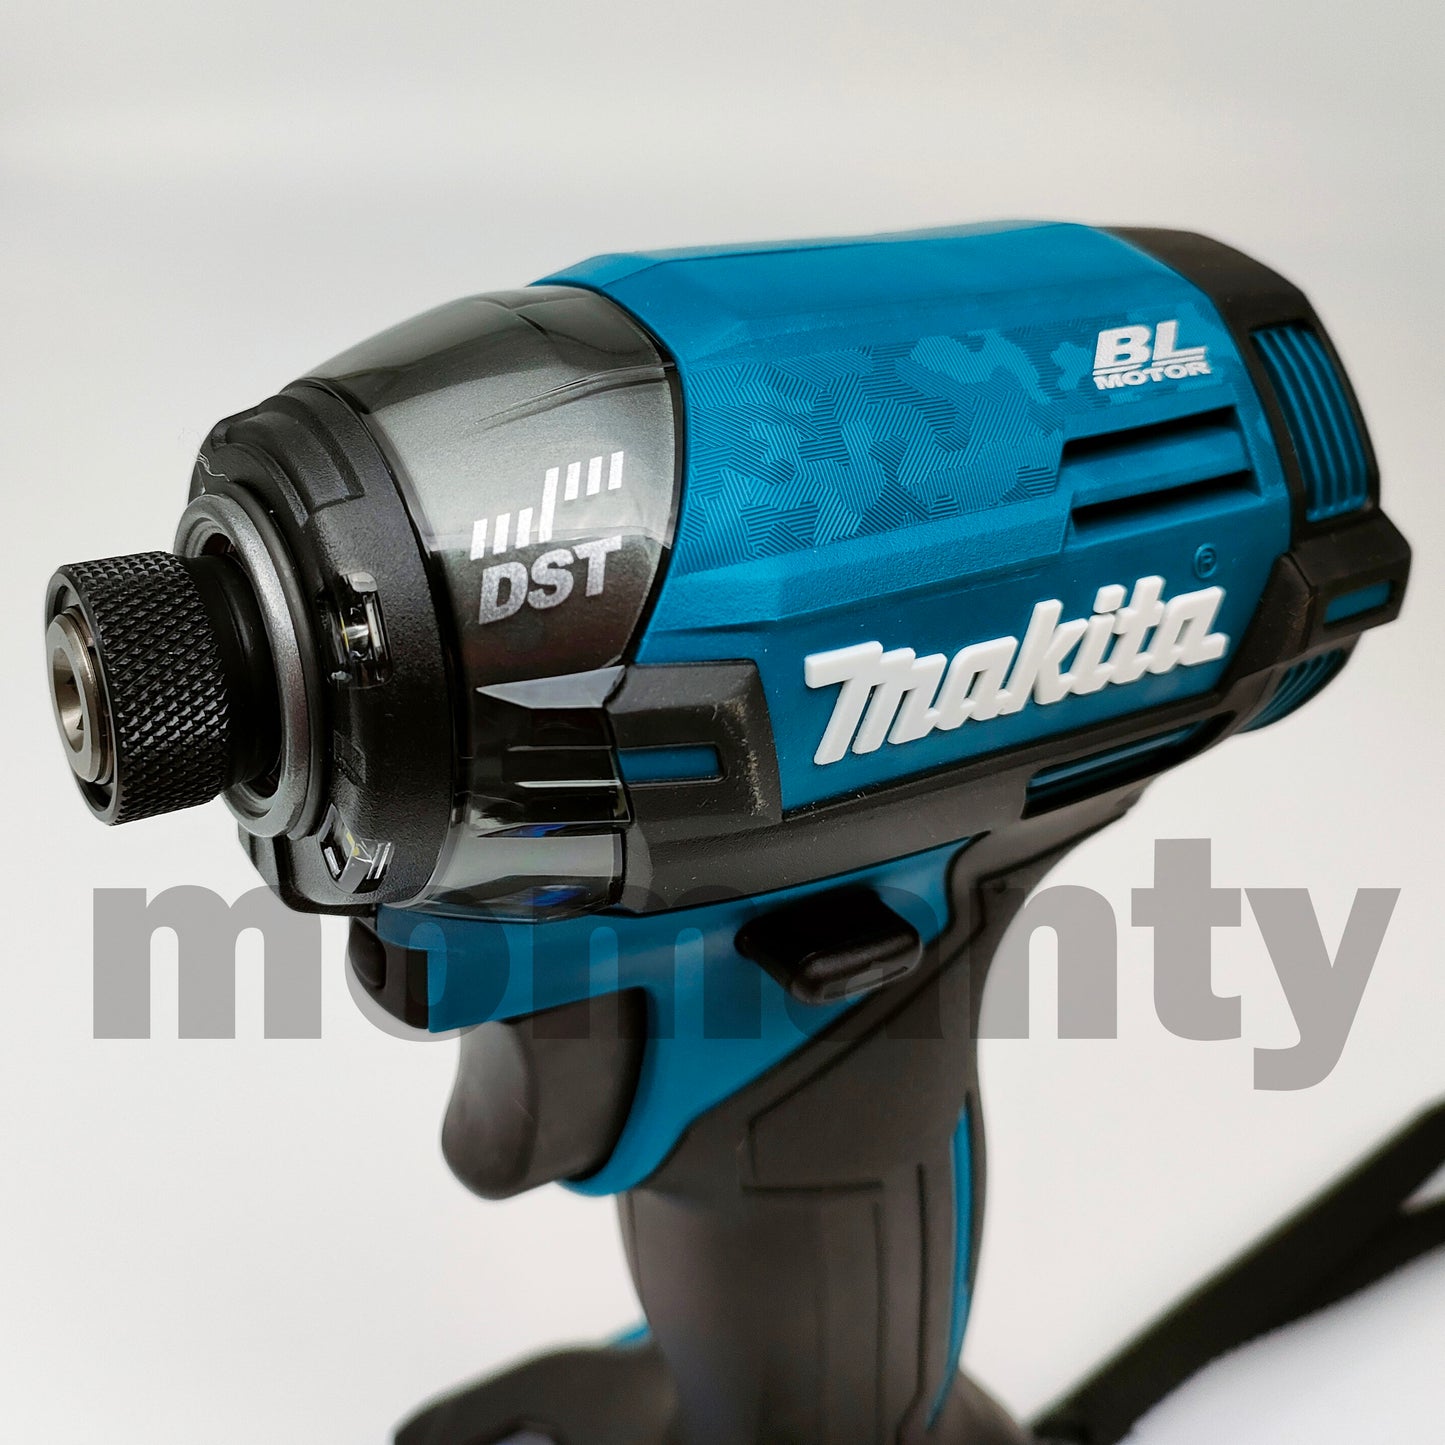 Makita TD002GZ TD002G 40Vmax XGT Impact Driver Blue Tool Only